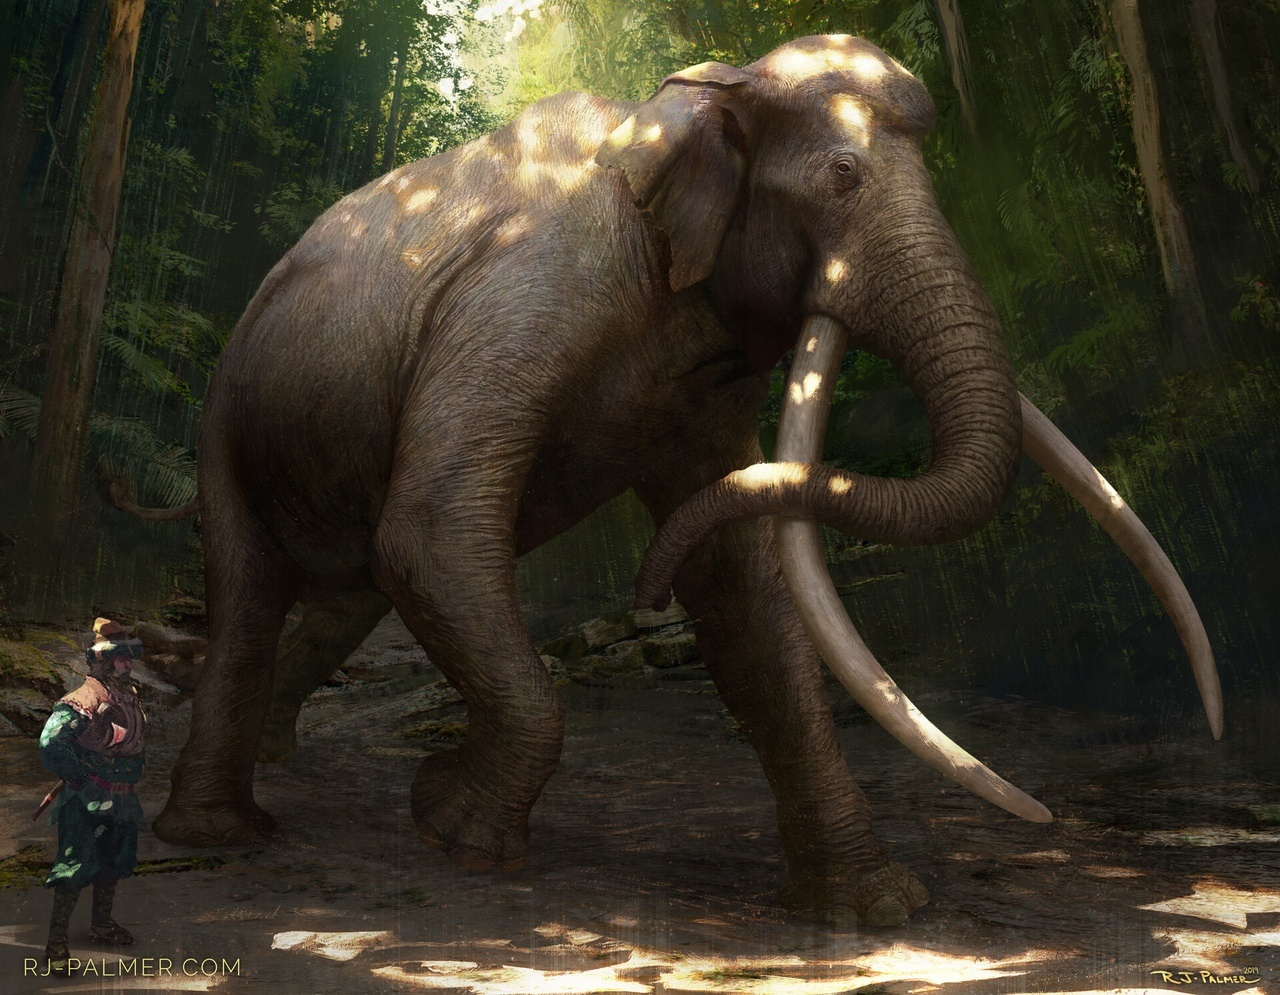 Азиатский прямобивневый слон: Титан, претендующий на звание крупнейшего наземного млекопитающего! Был в 2 раза больше современных слонов4